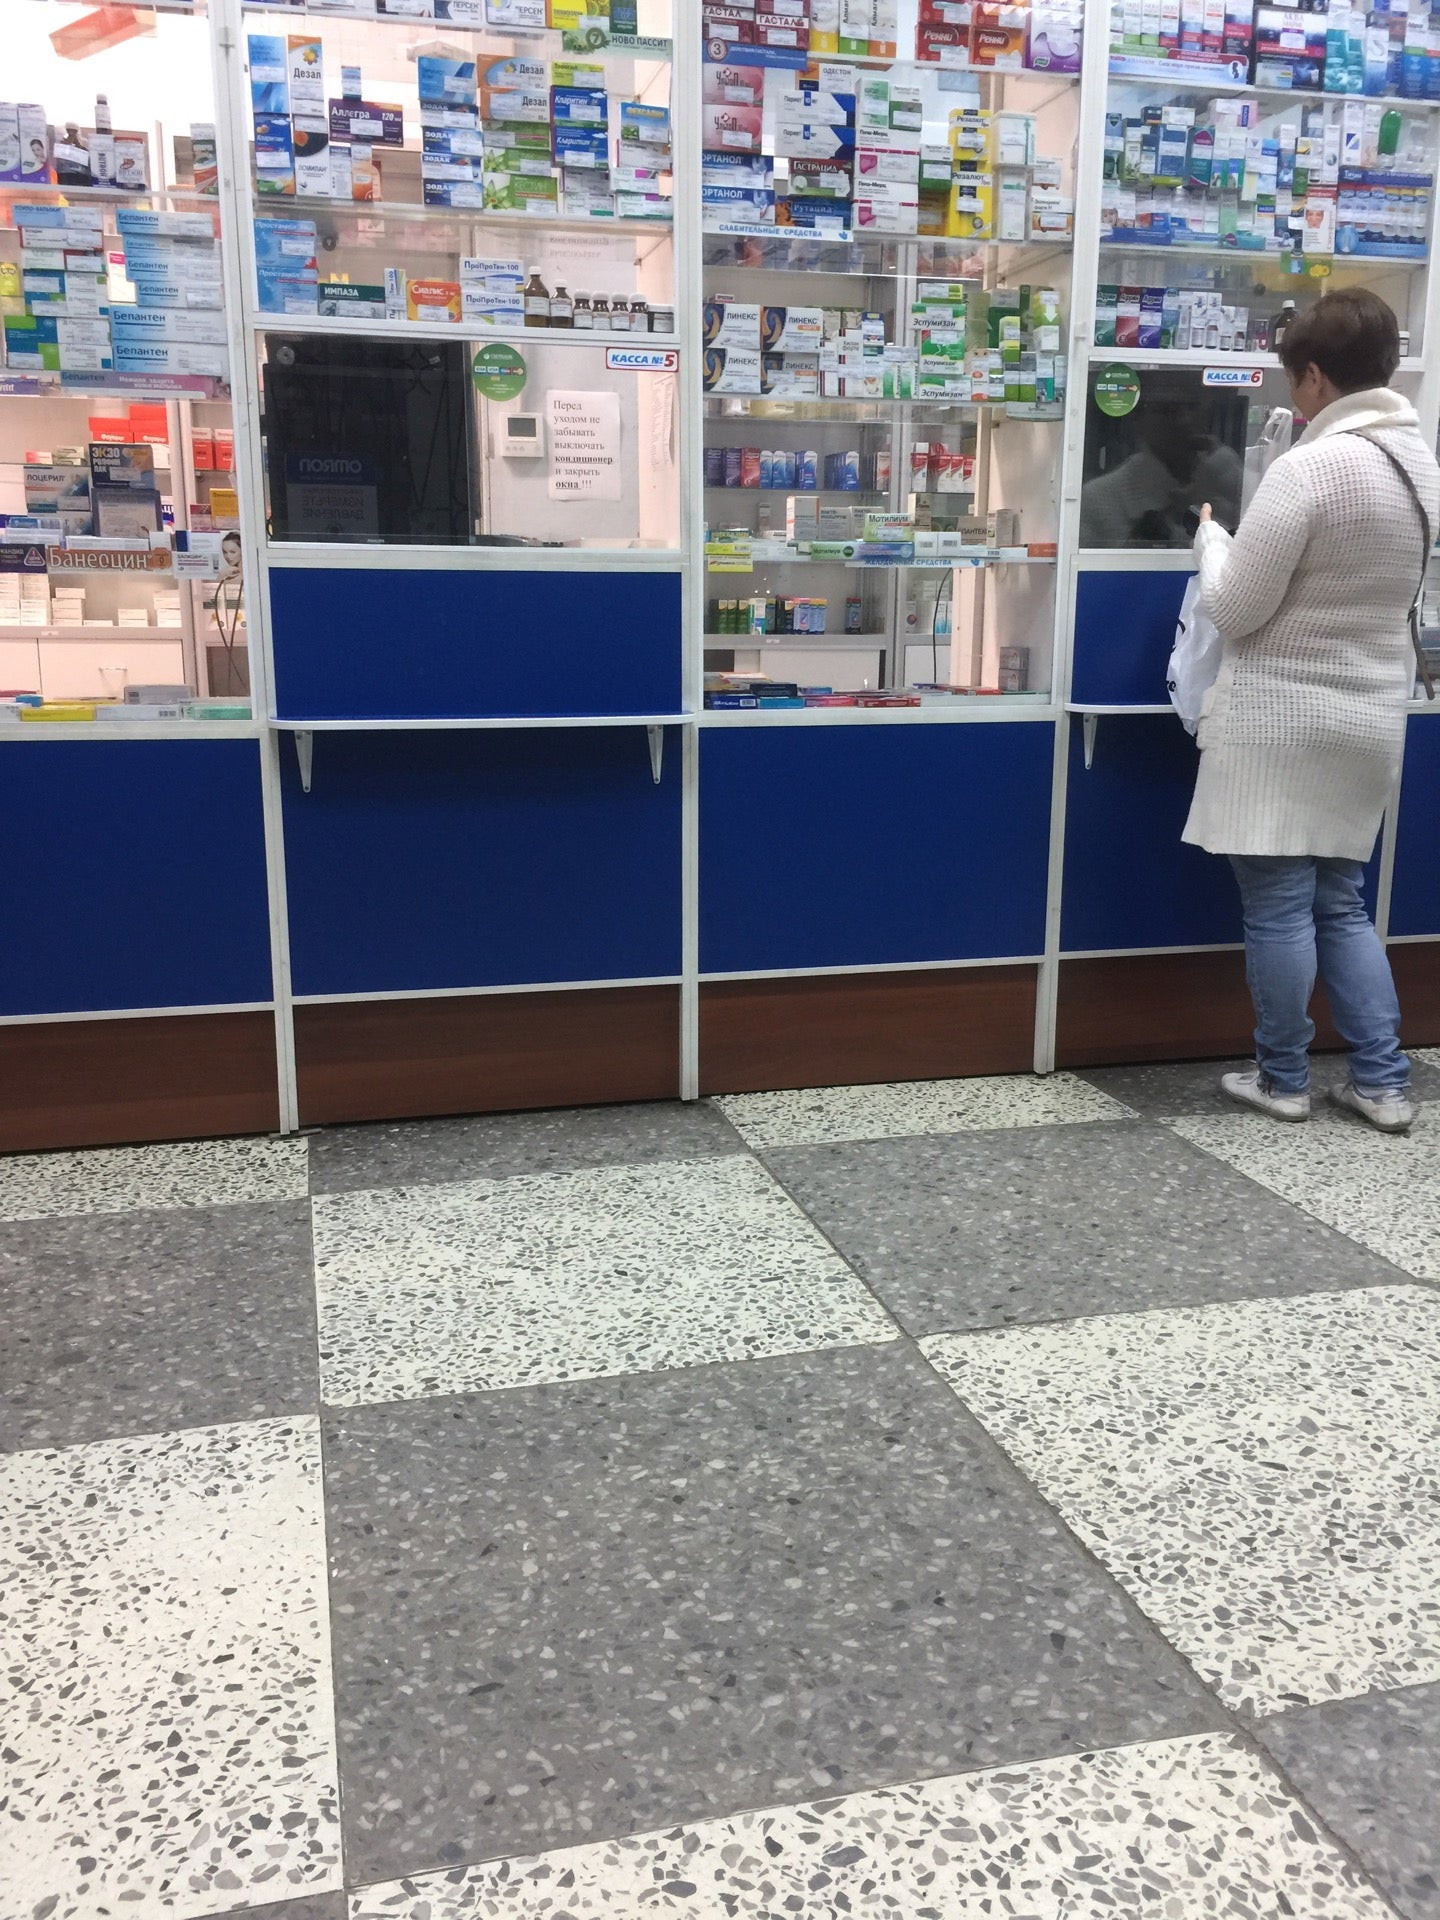 Аптеки фрунзенского района минска